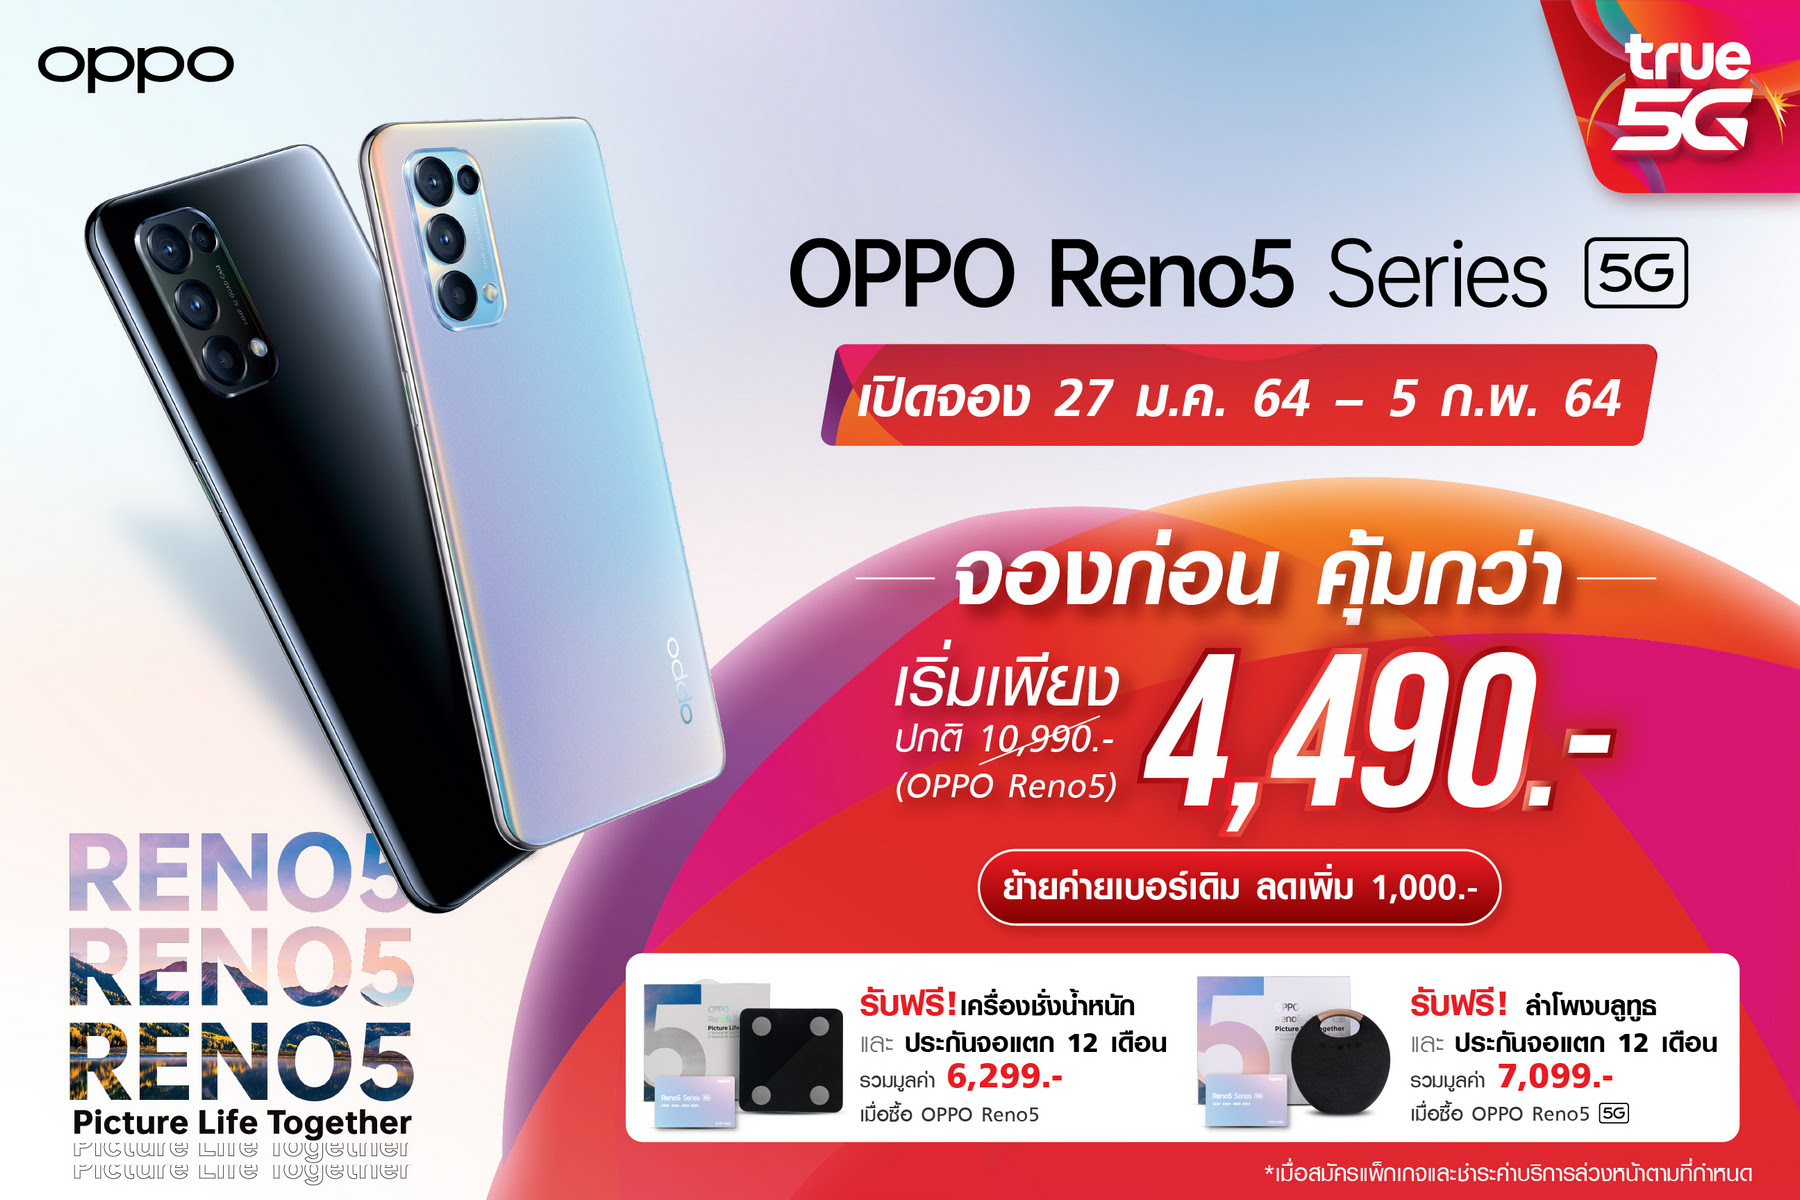 เปิดโปรเด็ดจาก ทรู 5G จอง OPPO Reno5 Series 5G ราคาดี 4,490 บาท